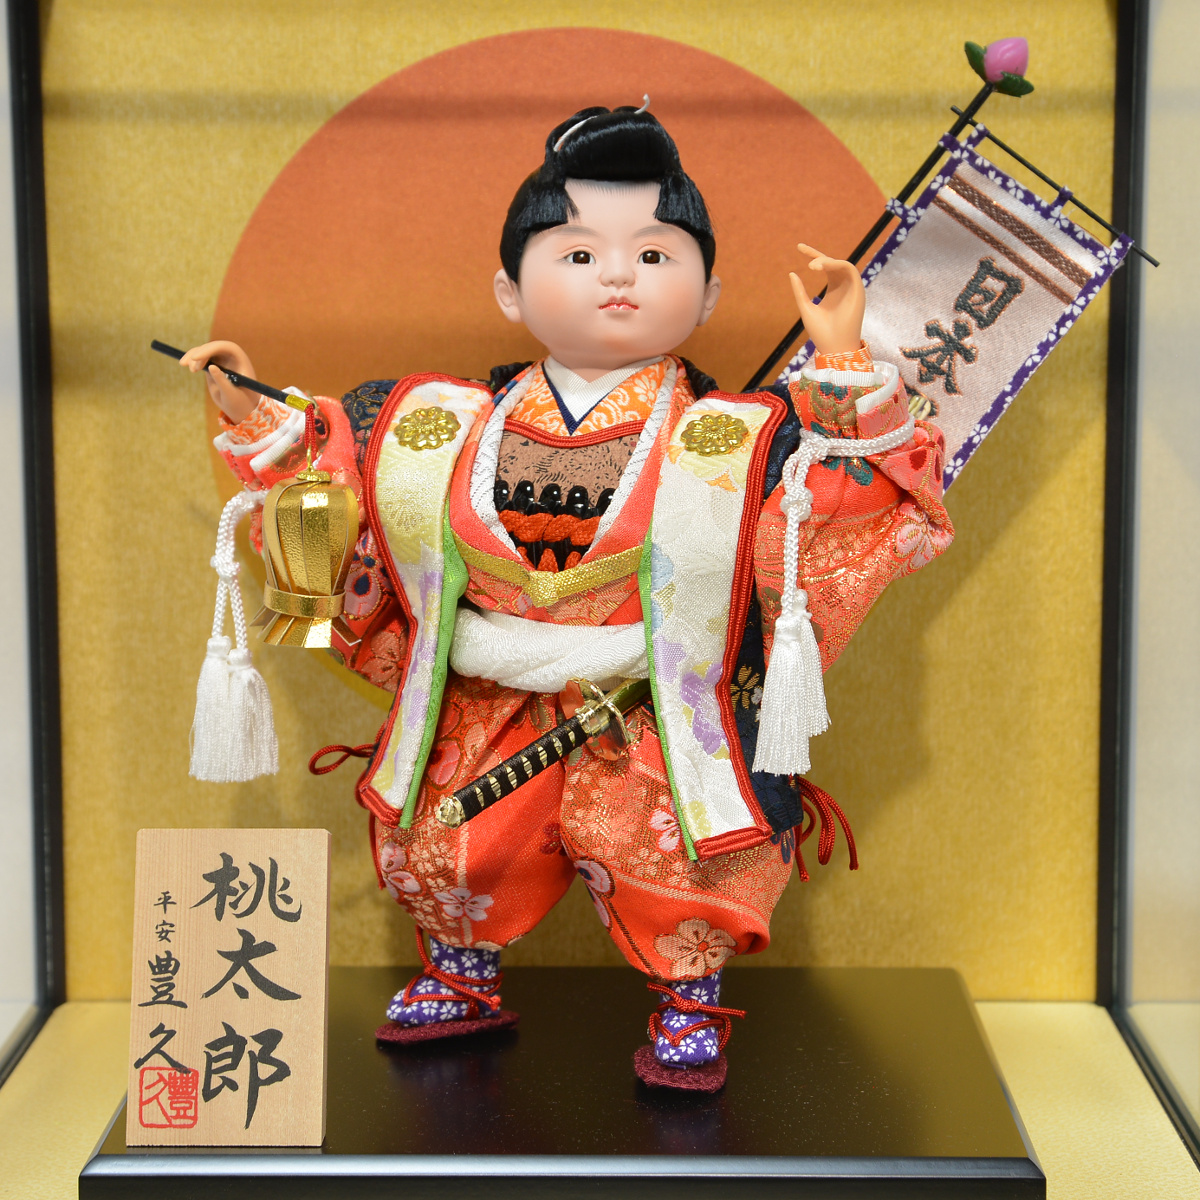 五月人形 お祝いケース飾り 子供大将 6号 桃太郎 間口36cm 5月人形 